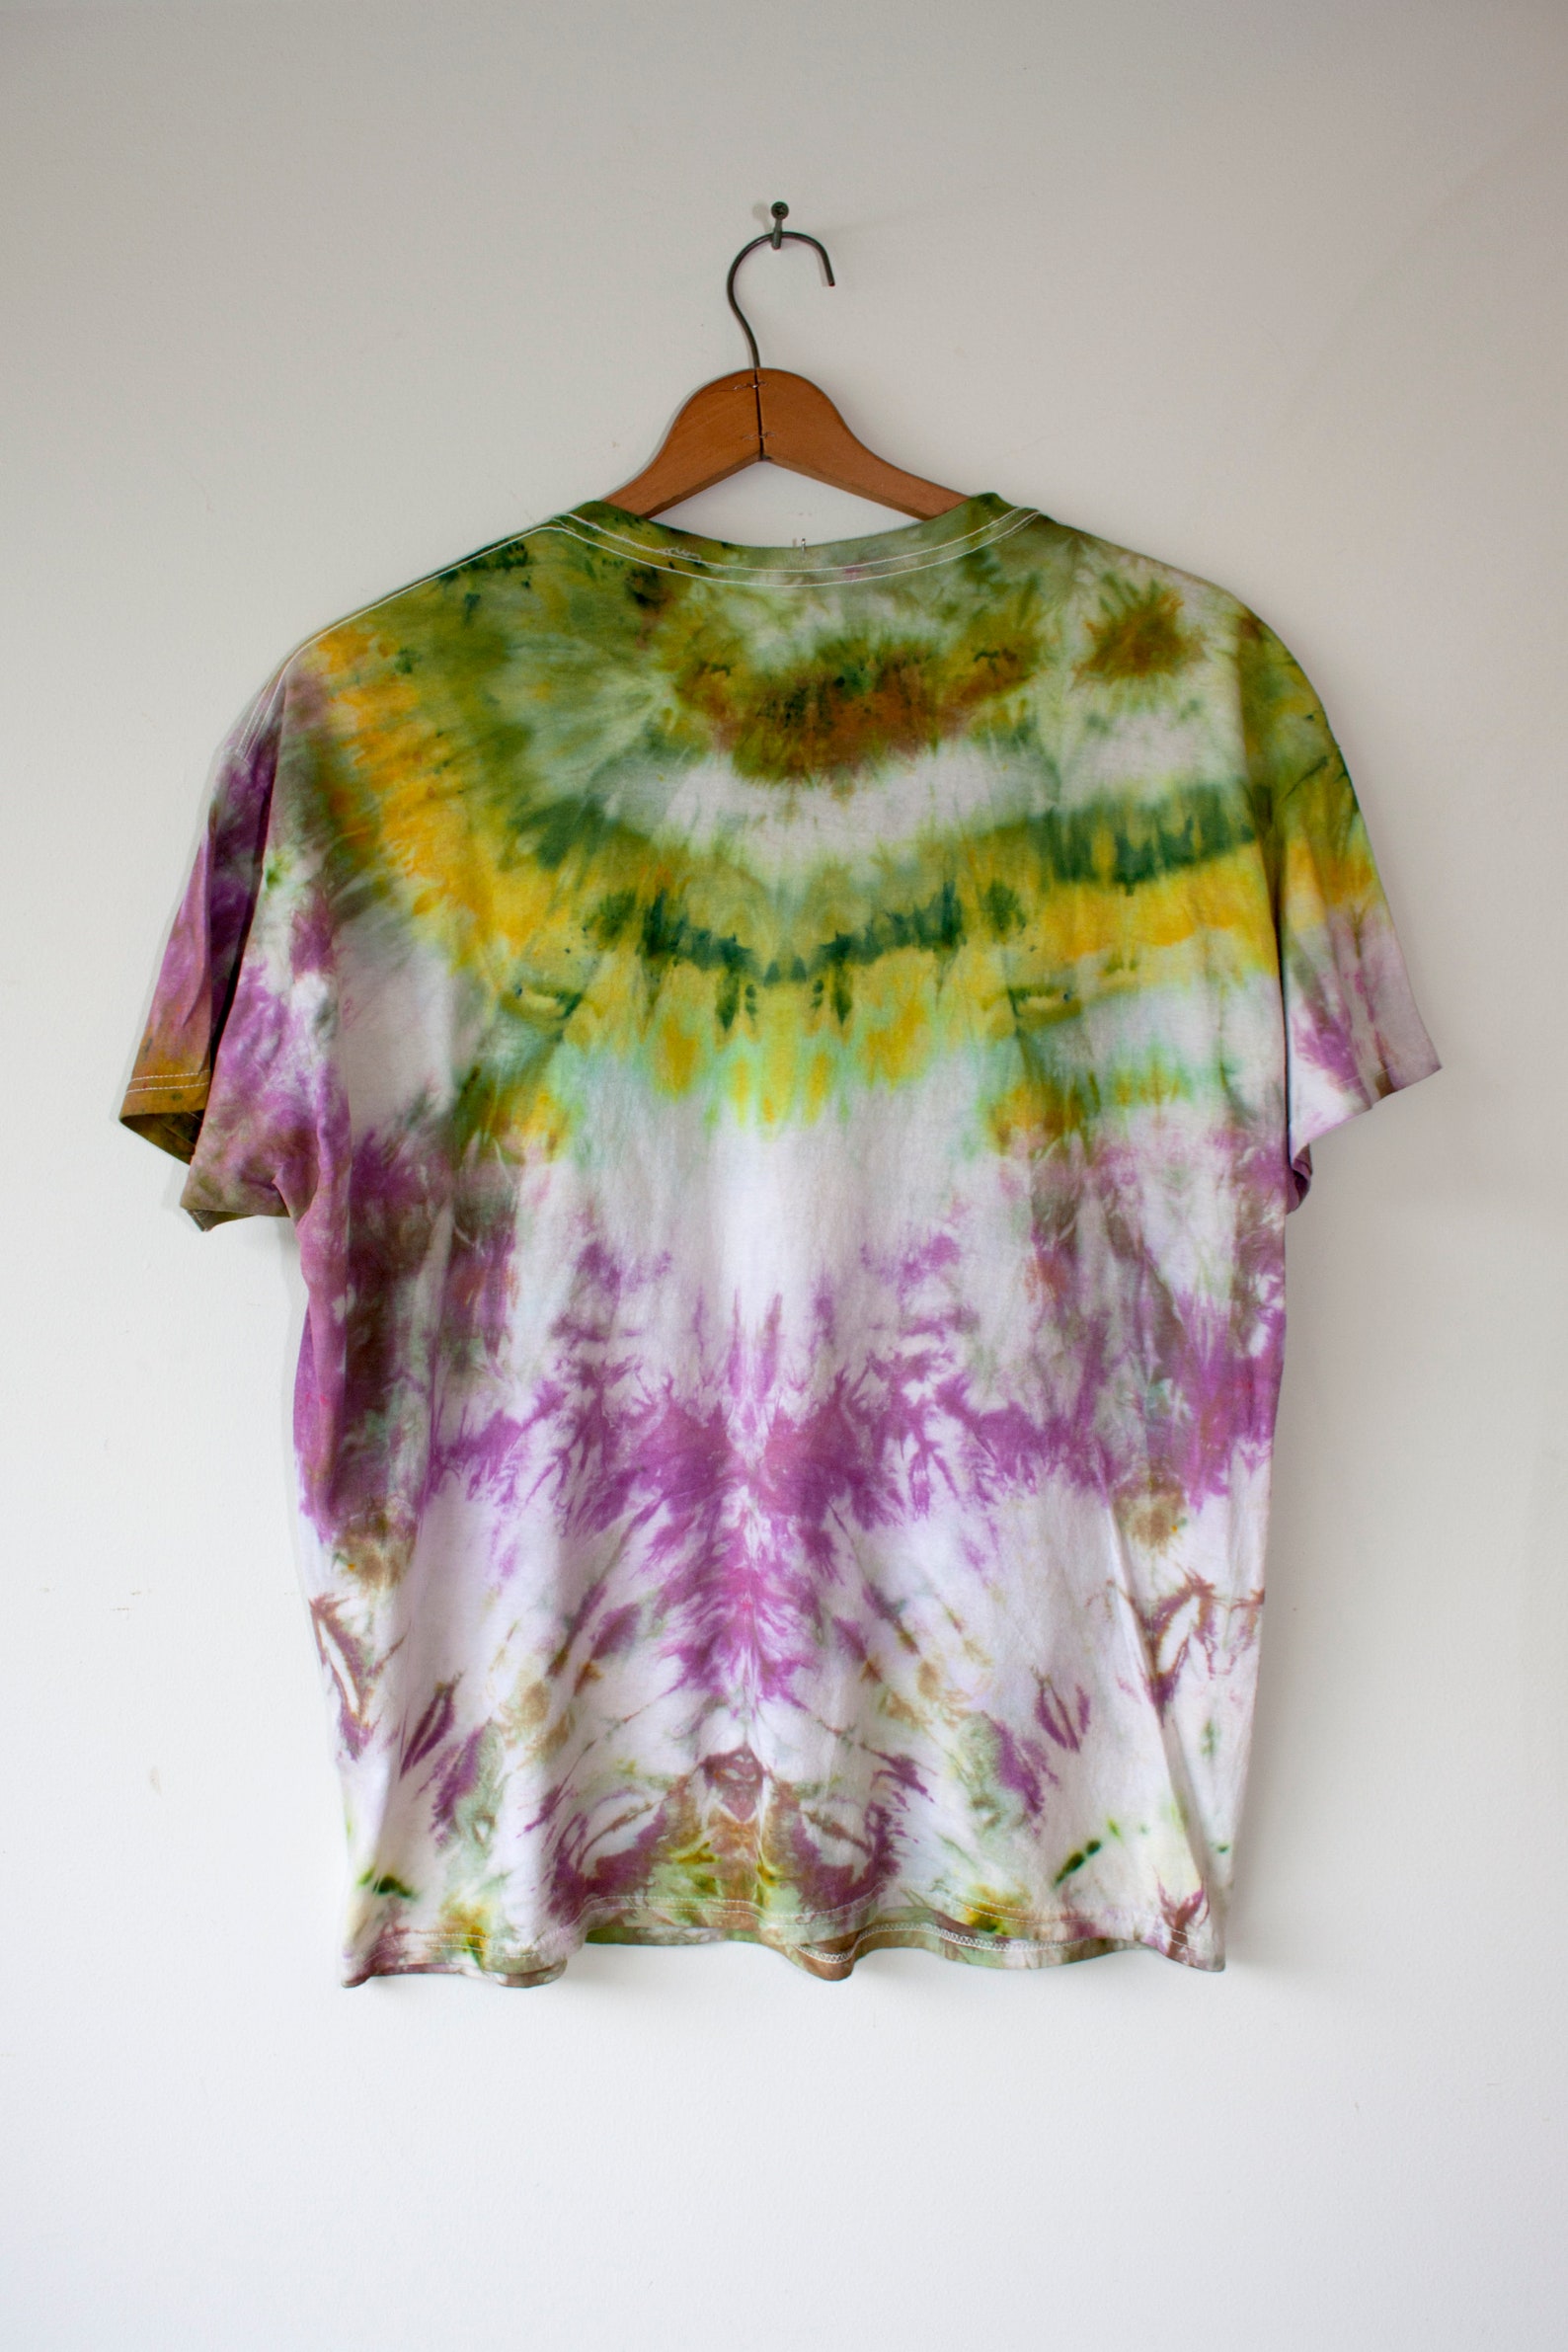 Tie Dye Shirt / Green Pink / XL Tie Dye Tye Dye Hippie | Etsy